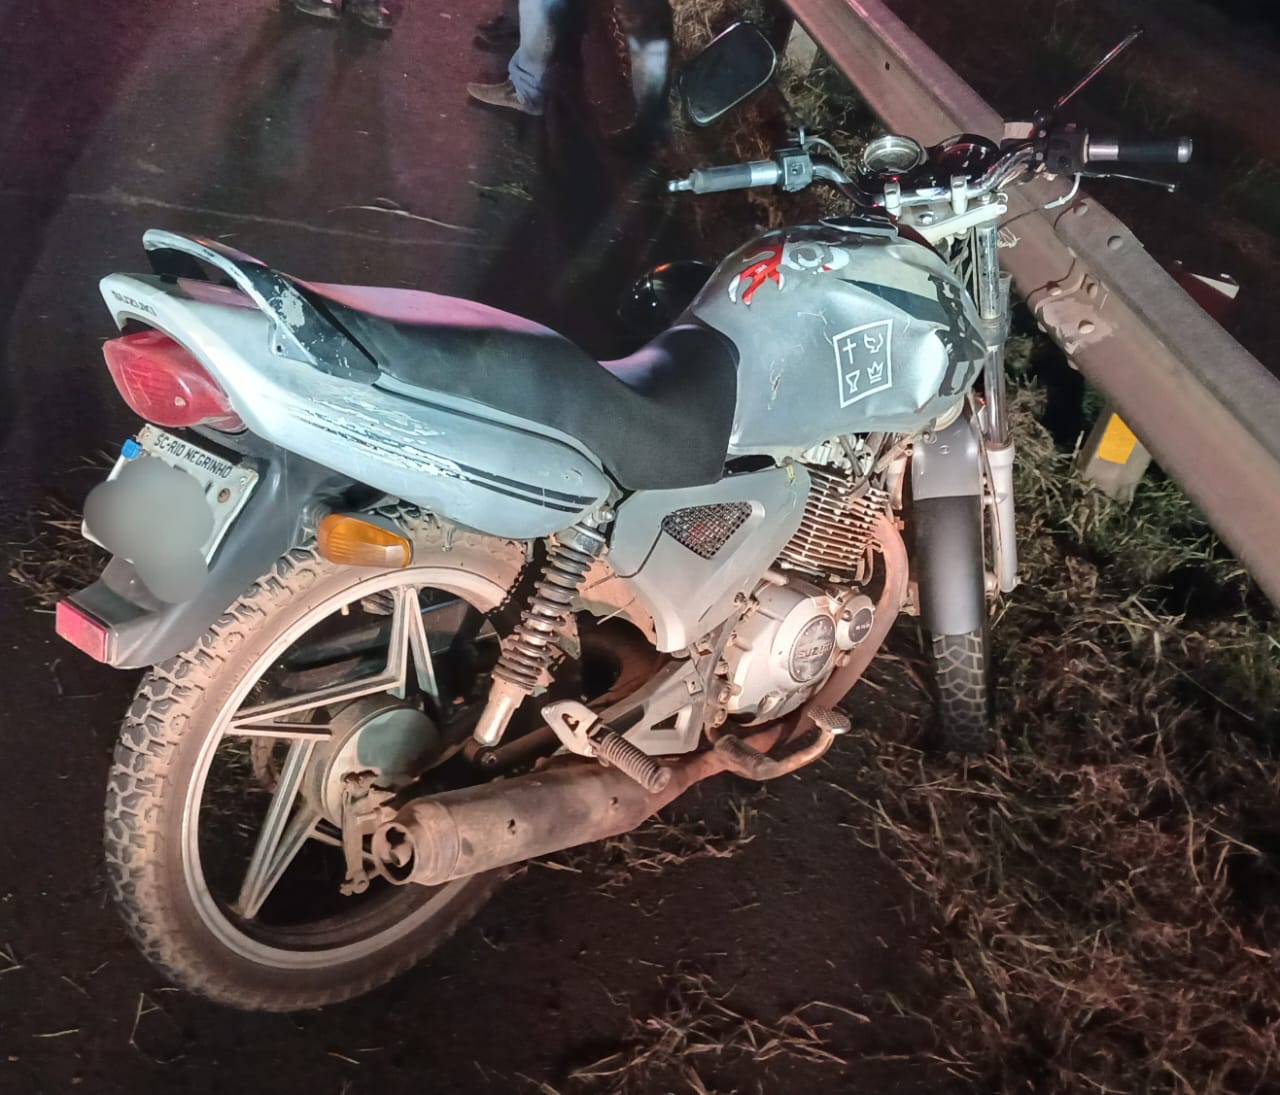 Piloto de moto colide com traseira de automóvel e abandona motocicleta